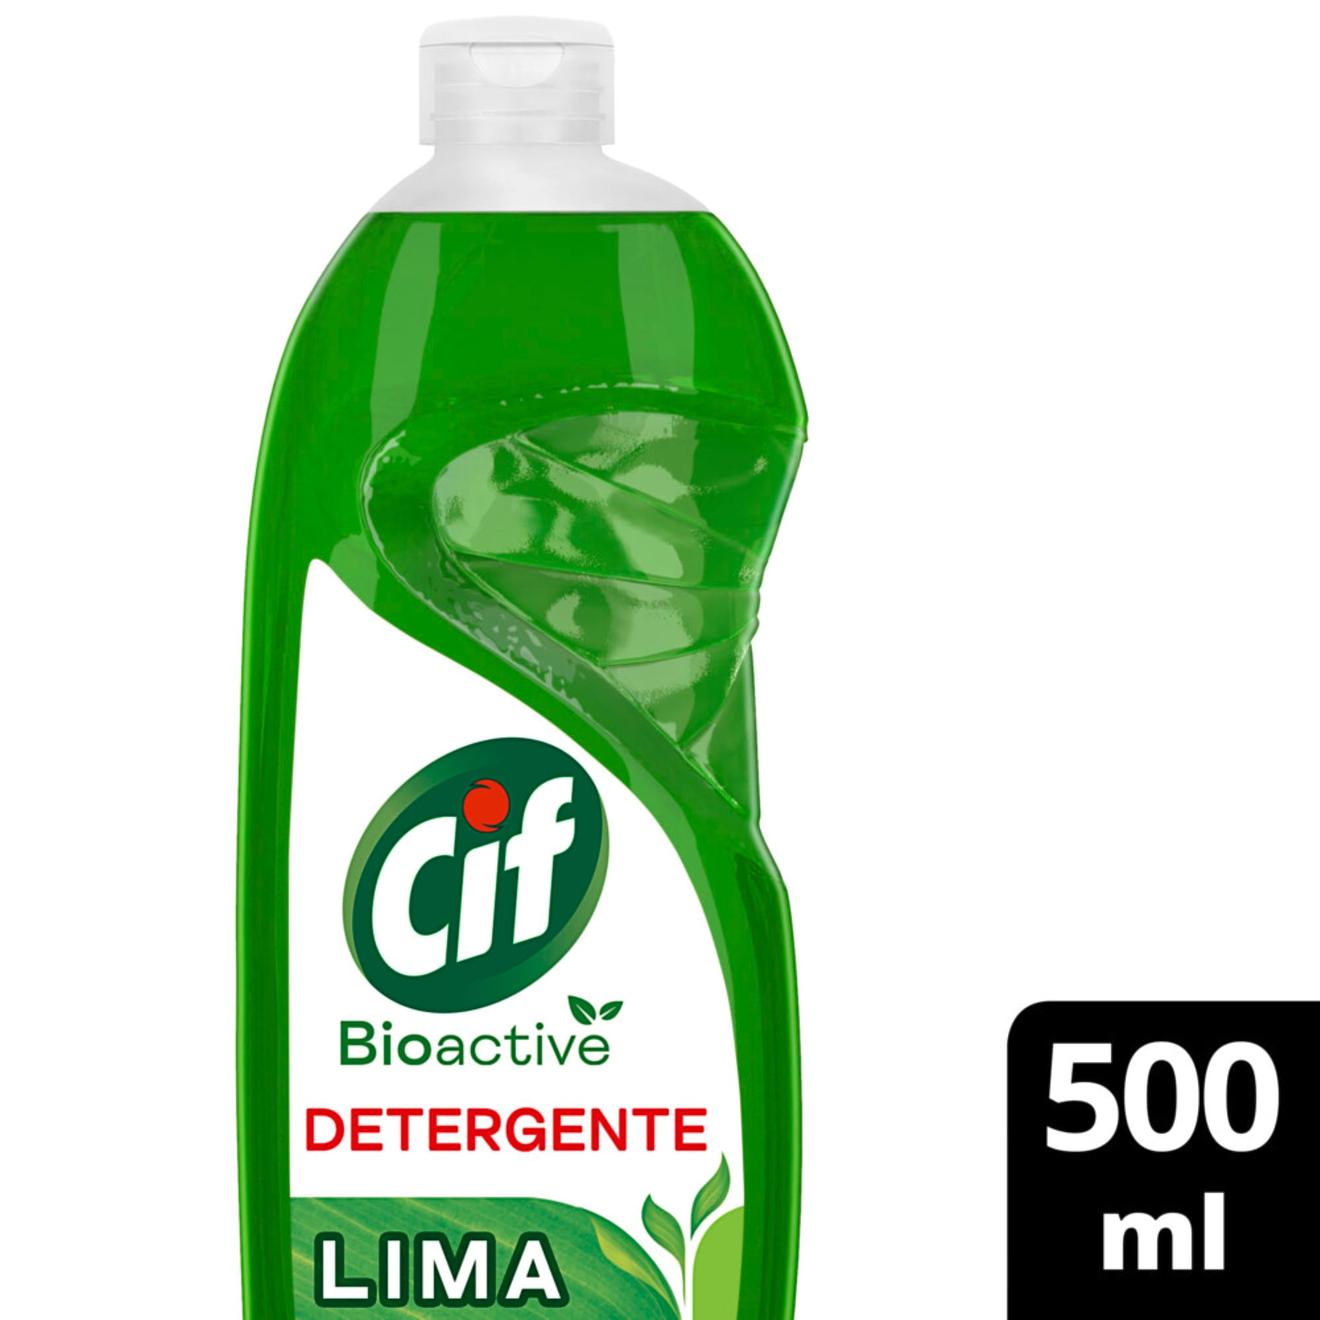 Oferta de Detergente Cif bioactive lima 500 cc. por $1629 en Carrefour